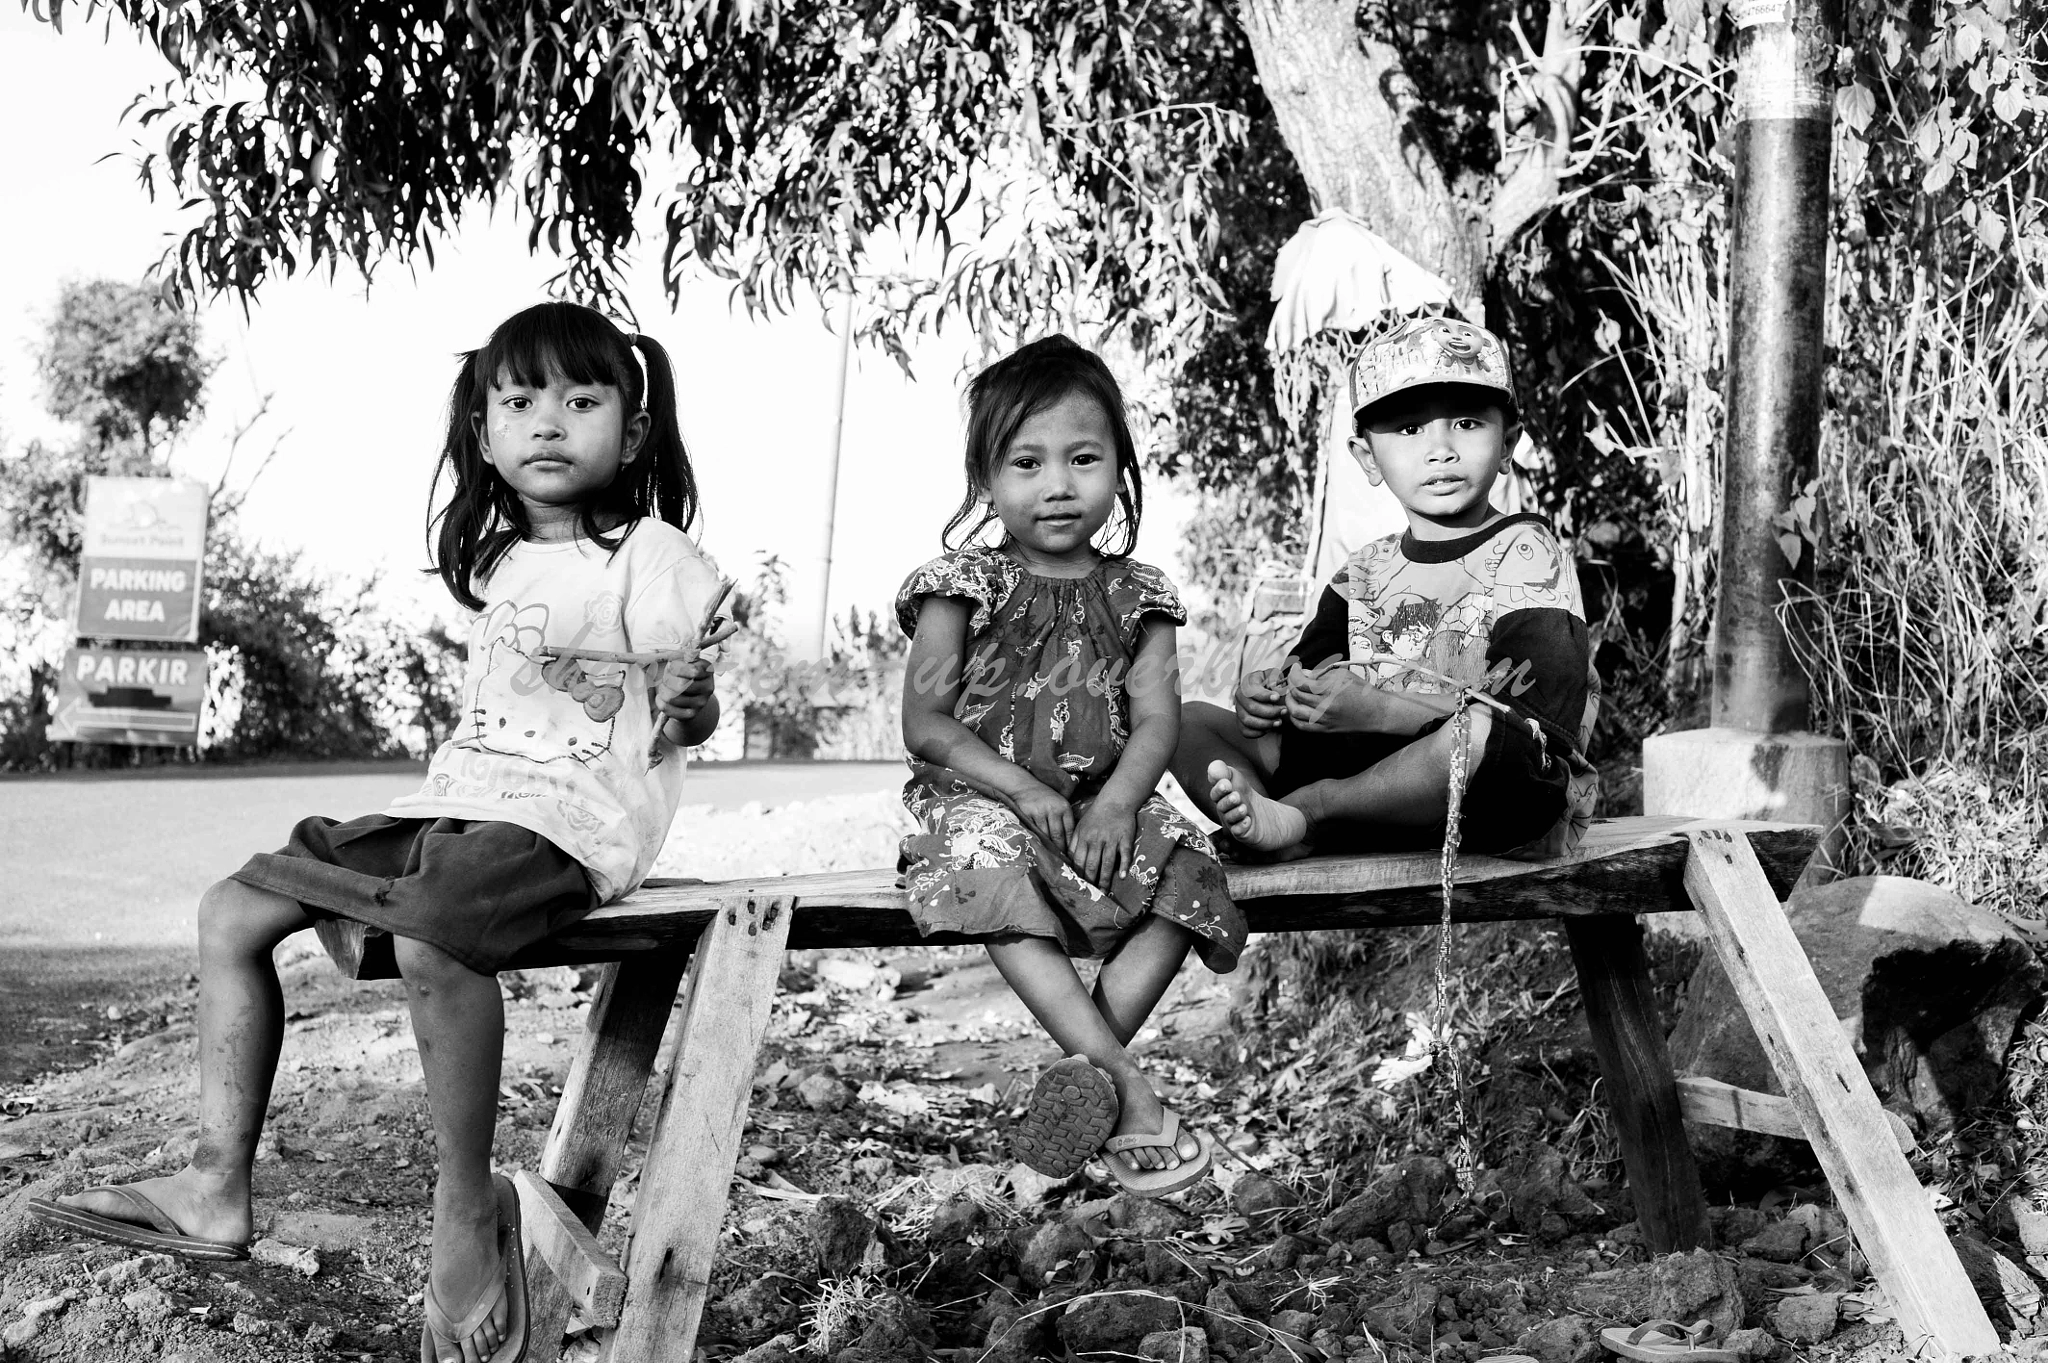 Nikon D3 + Nikon AF Nikkor 50mm F1.8D sample photo. Three little kids photography